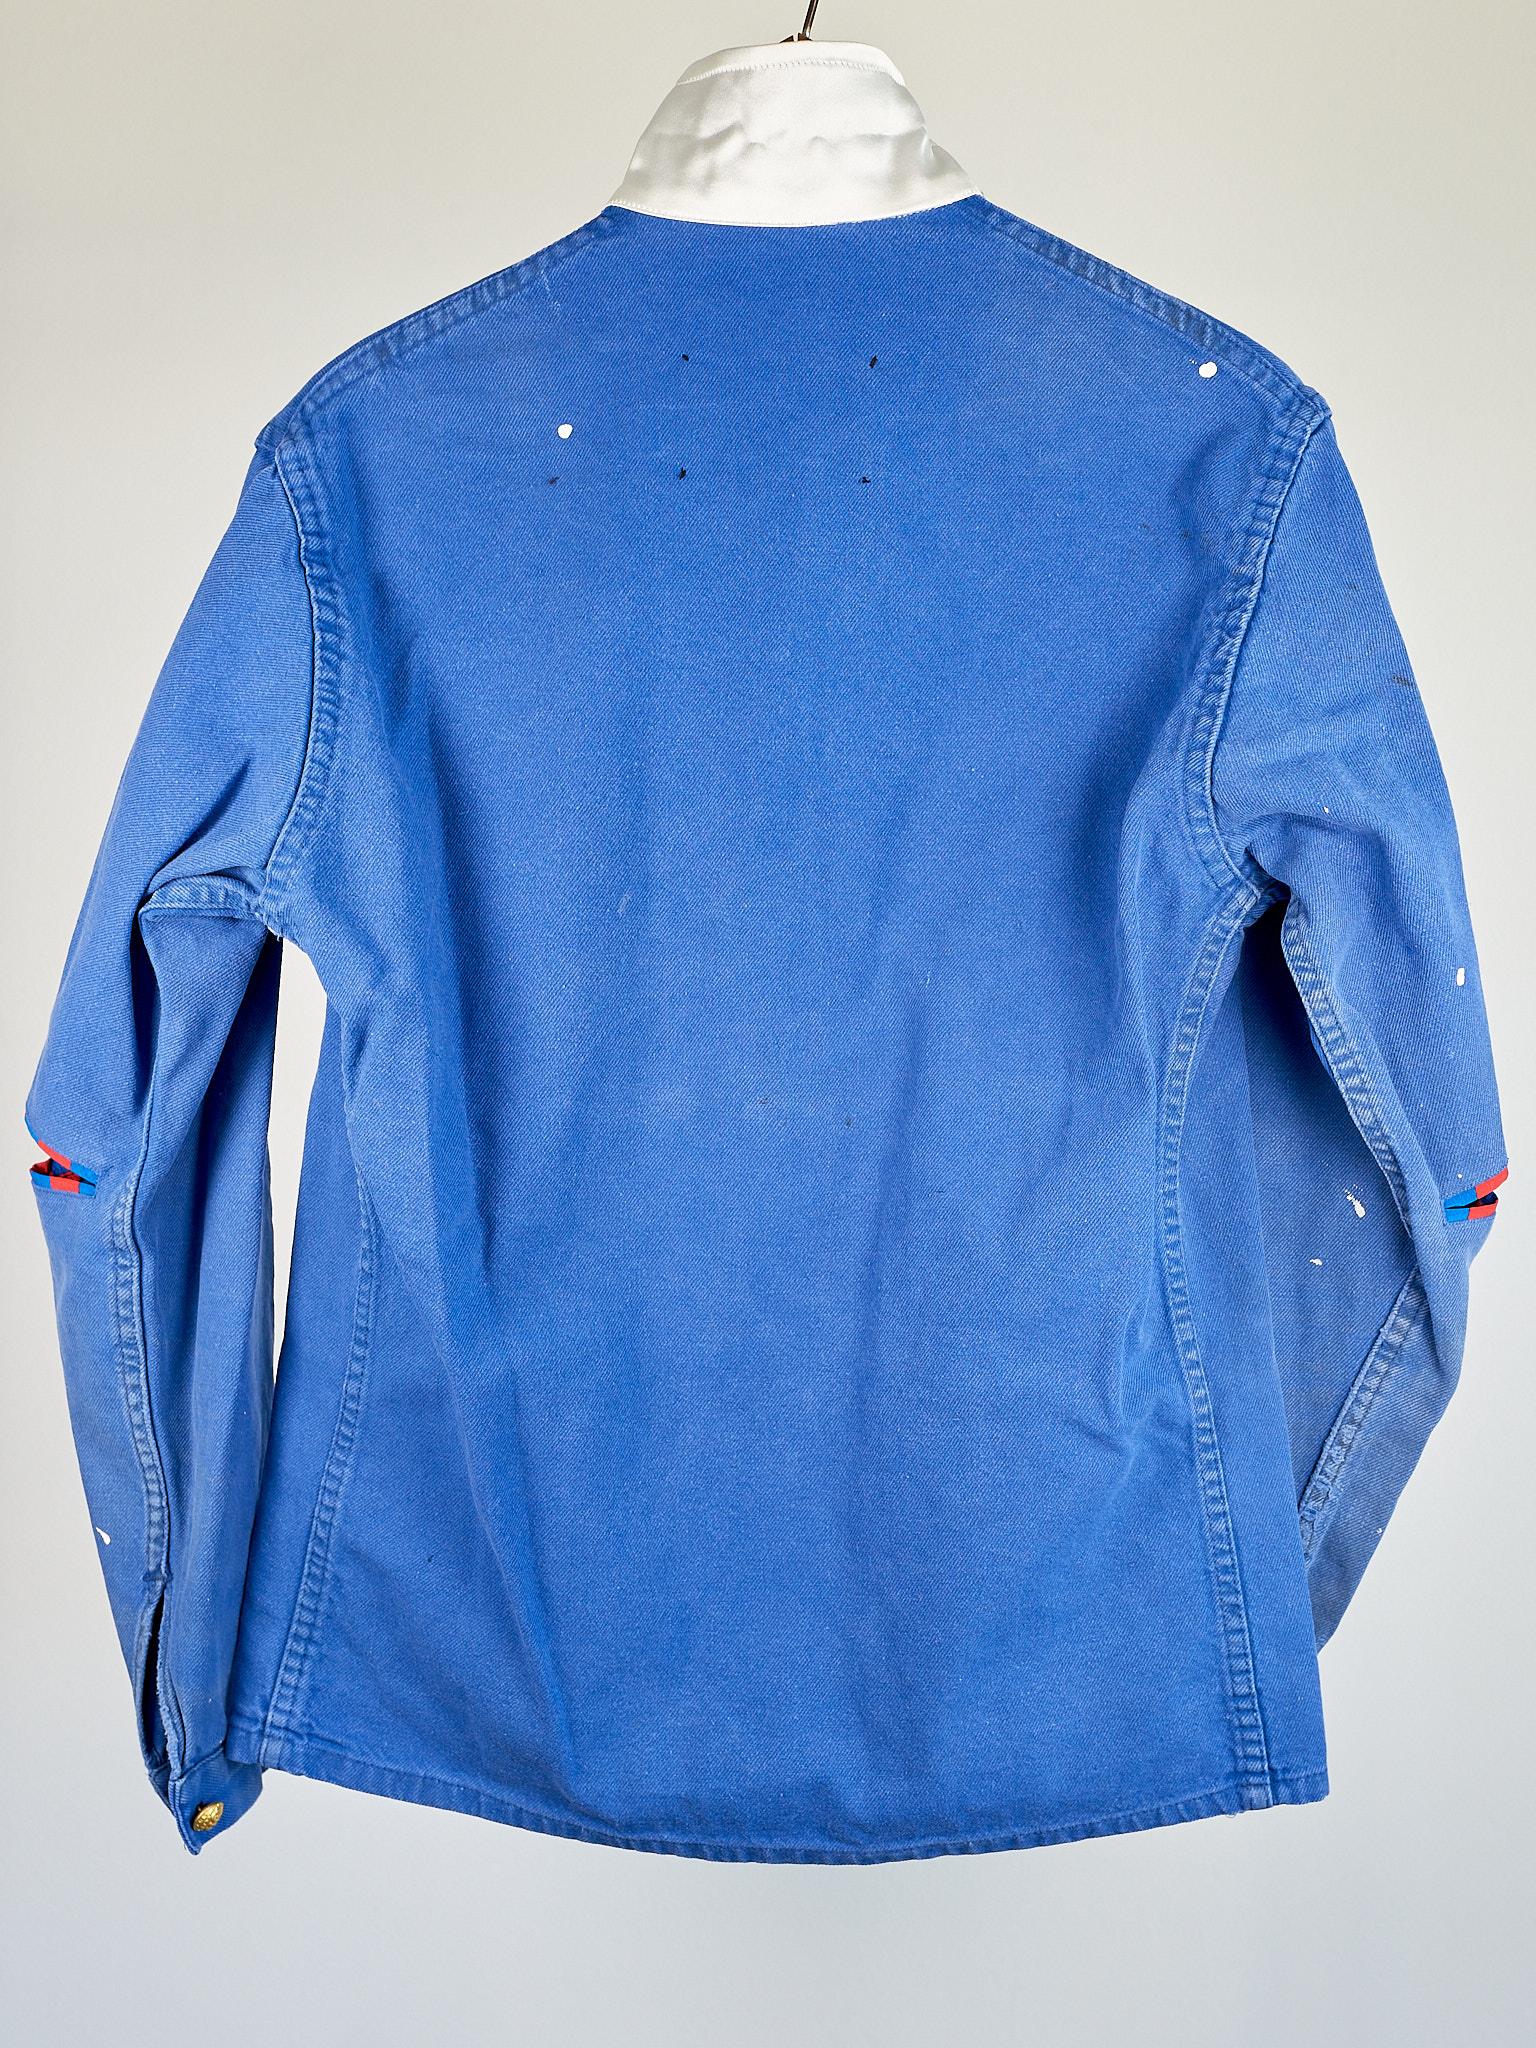 Blue Work Wear Jacket Vintage Silver Bullion Fringes Italian Silk 5